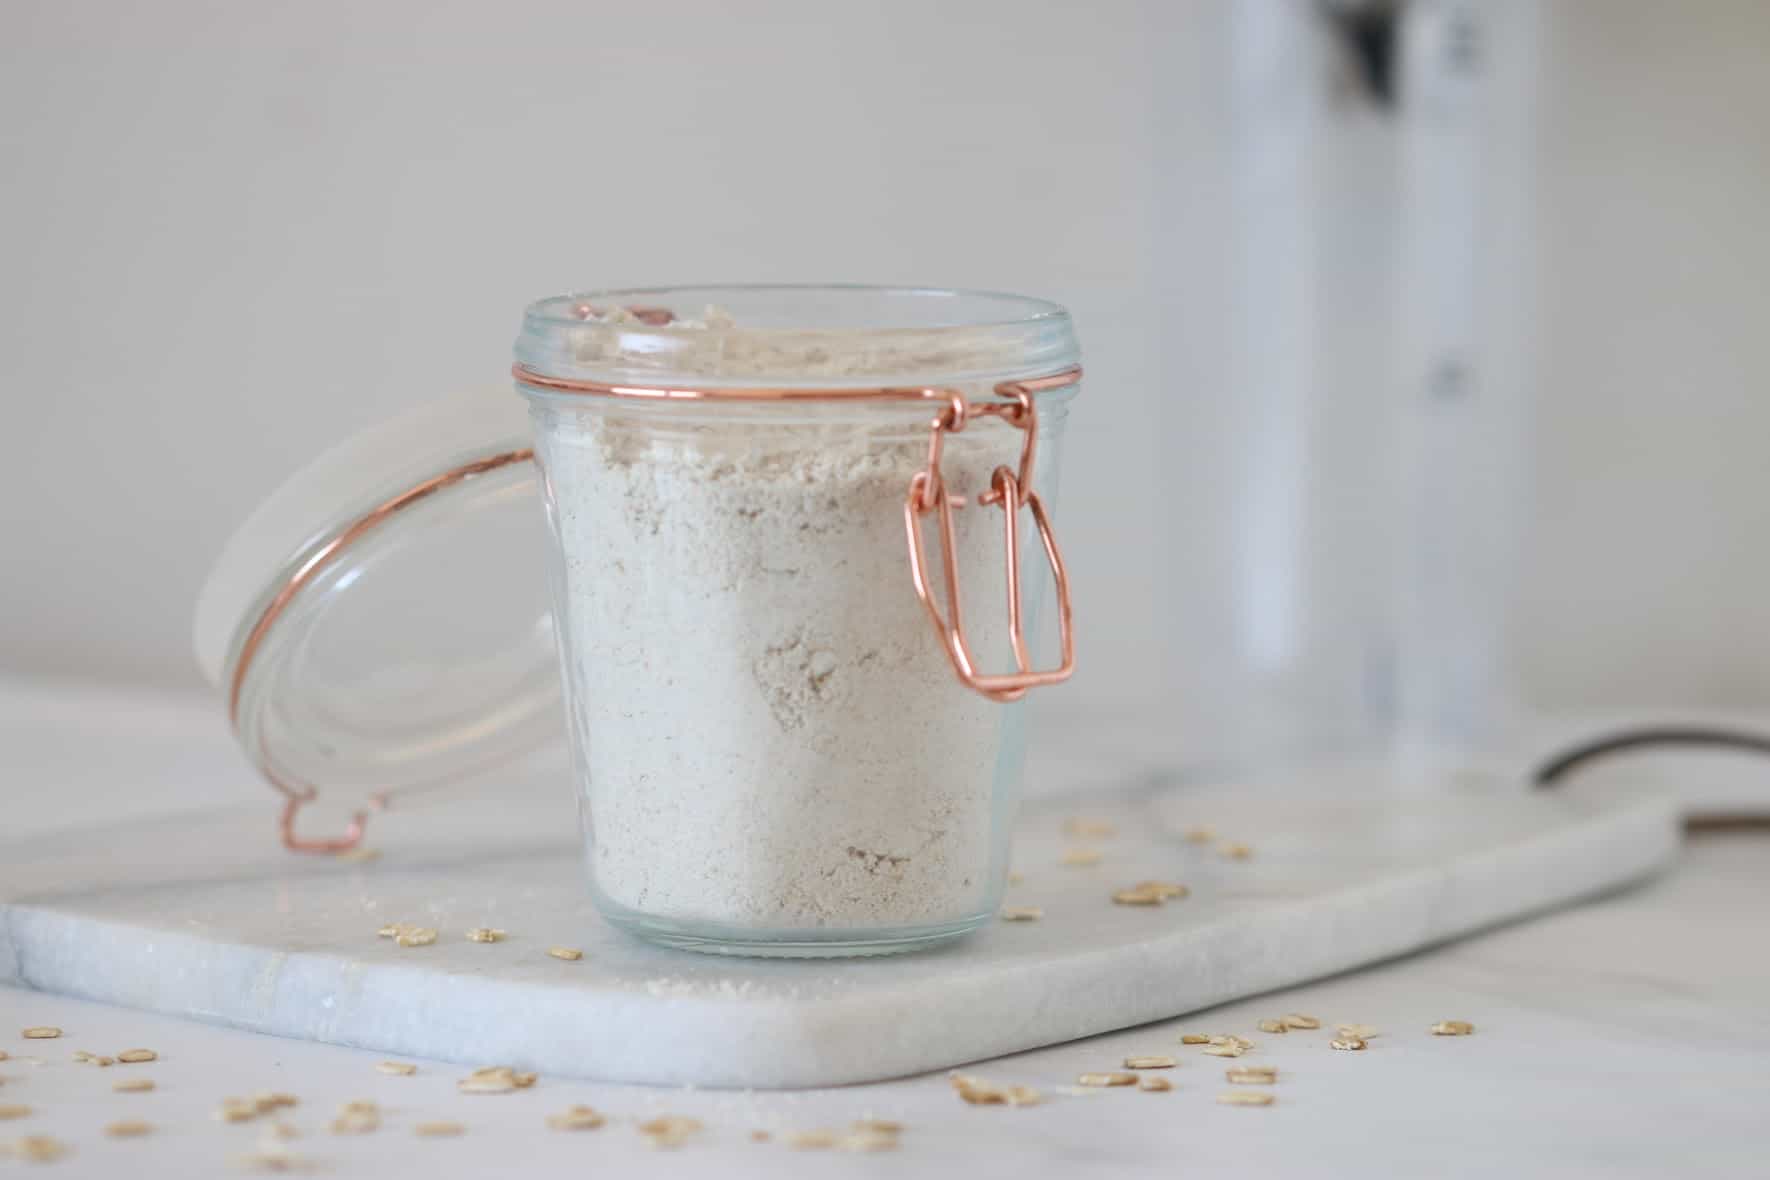 oat flour in a jar